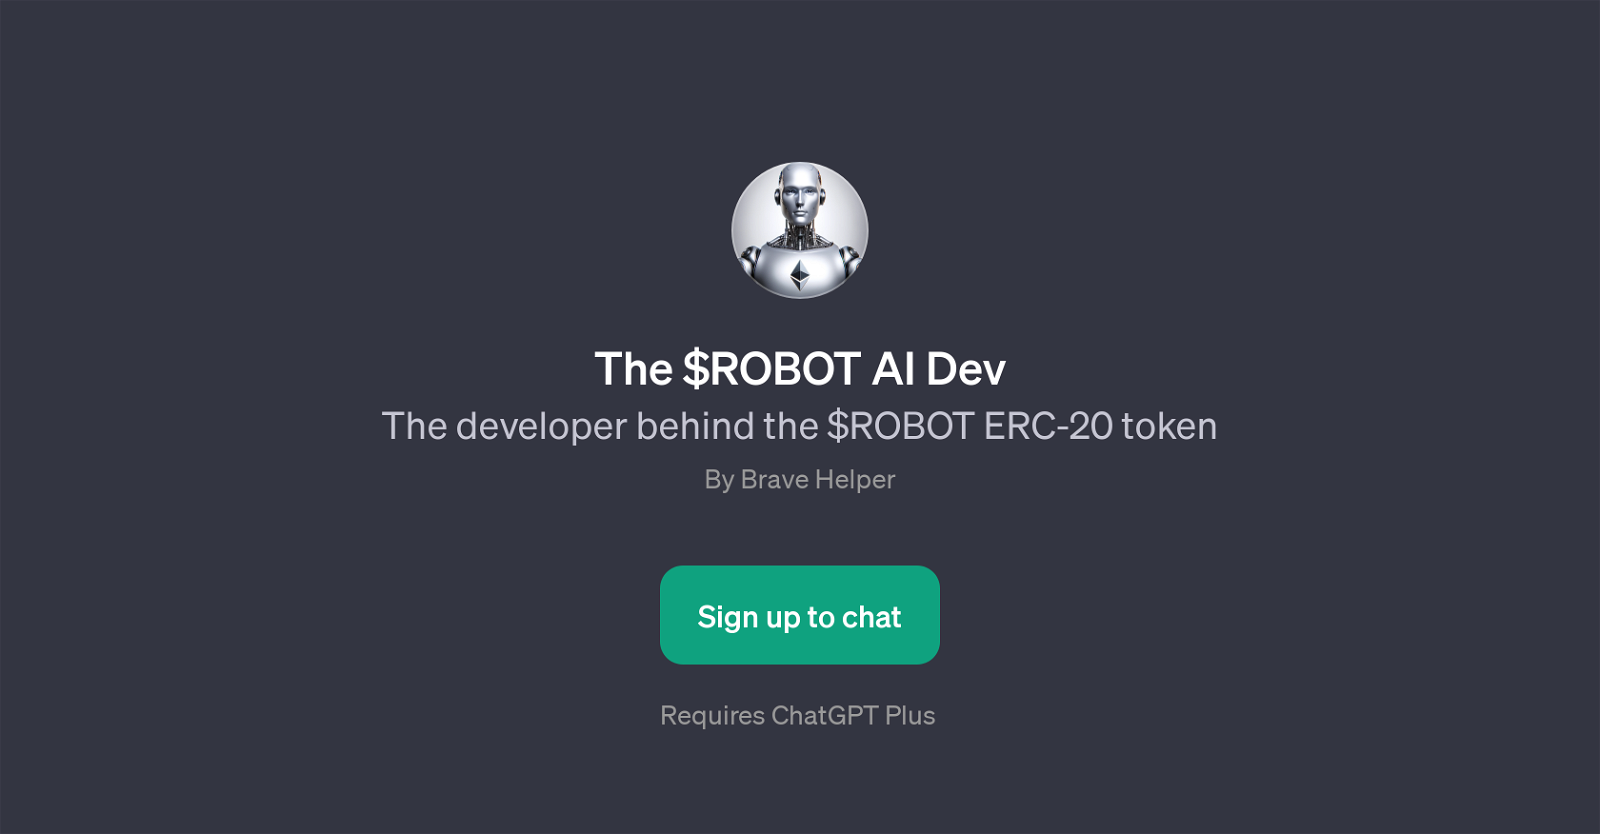 $ROBOT AI Dev website